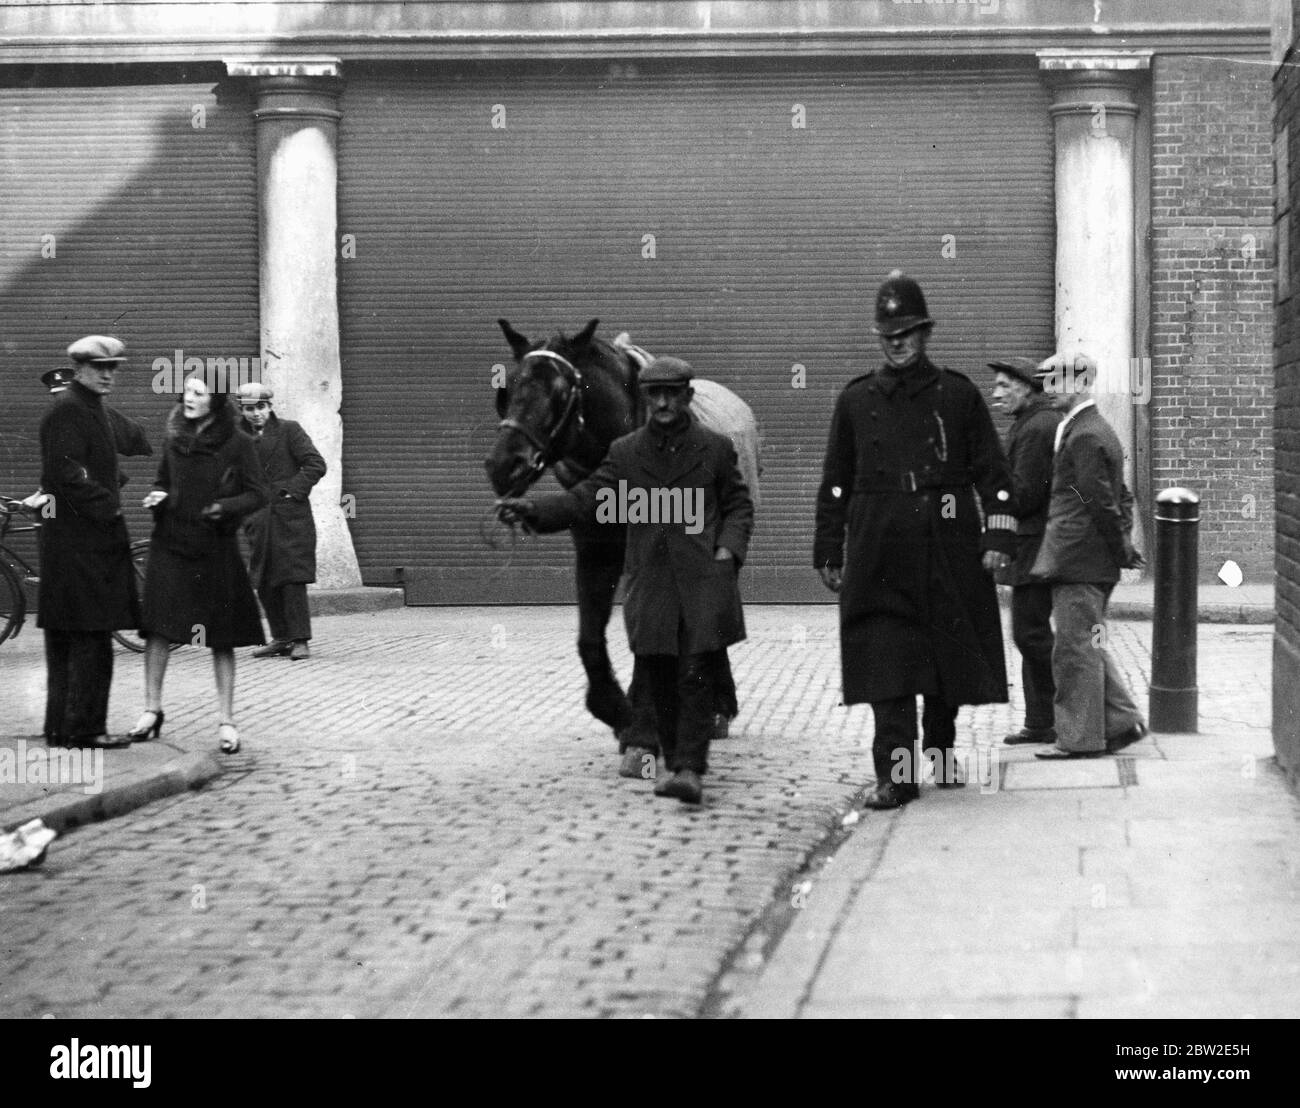 PC Dent und ein lahmes Pferd - wenn das Pferd nicht arbeitsfähig wäre, dann würde es sofort aus den Schächten des Wagens entfernt und zum TierPfund genommen werden. Der Fahrer würde natürlich zum Nick (Polizeistation) gebracht. East End von London. 1920er/1930er Jahre Stockfoto